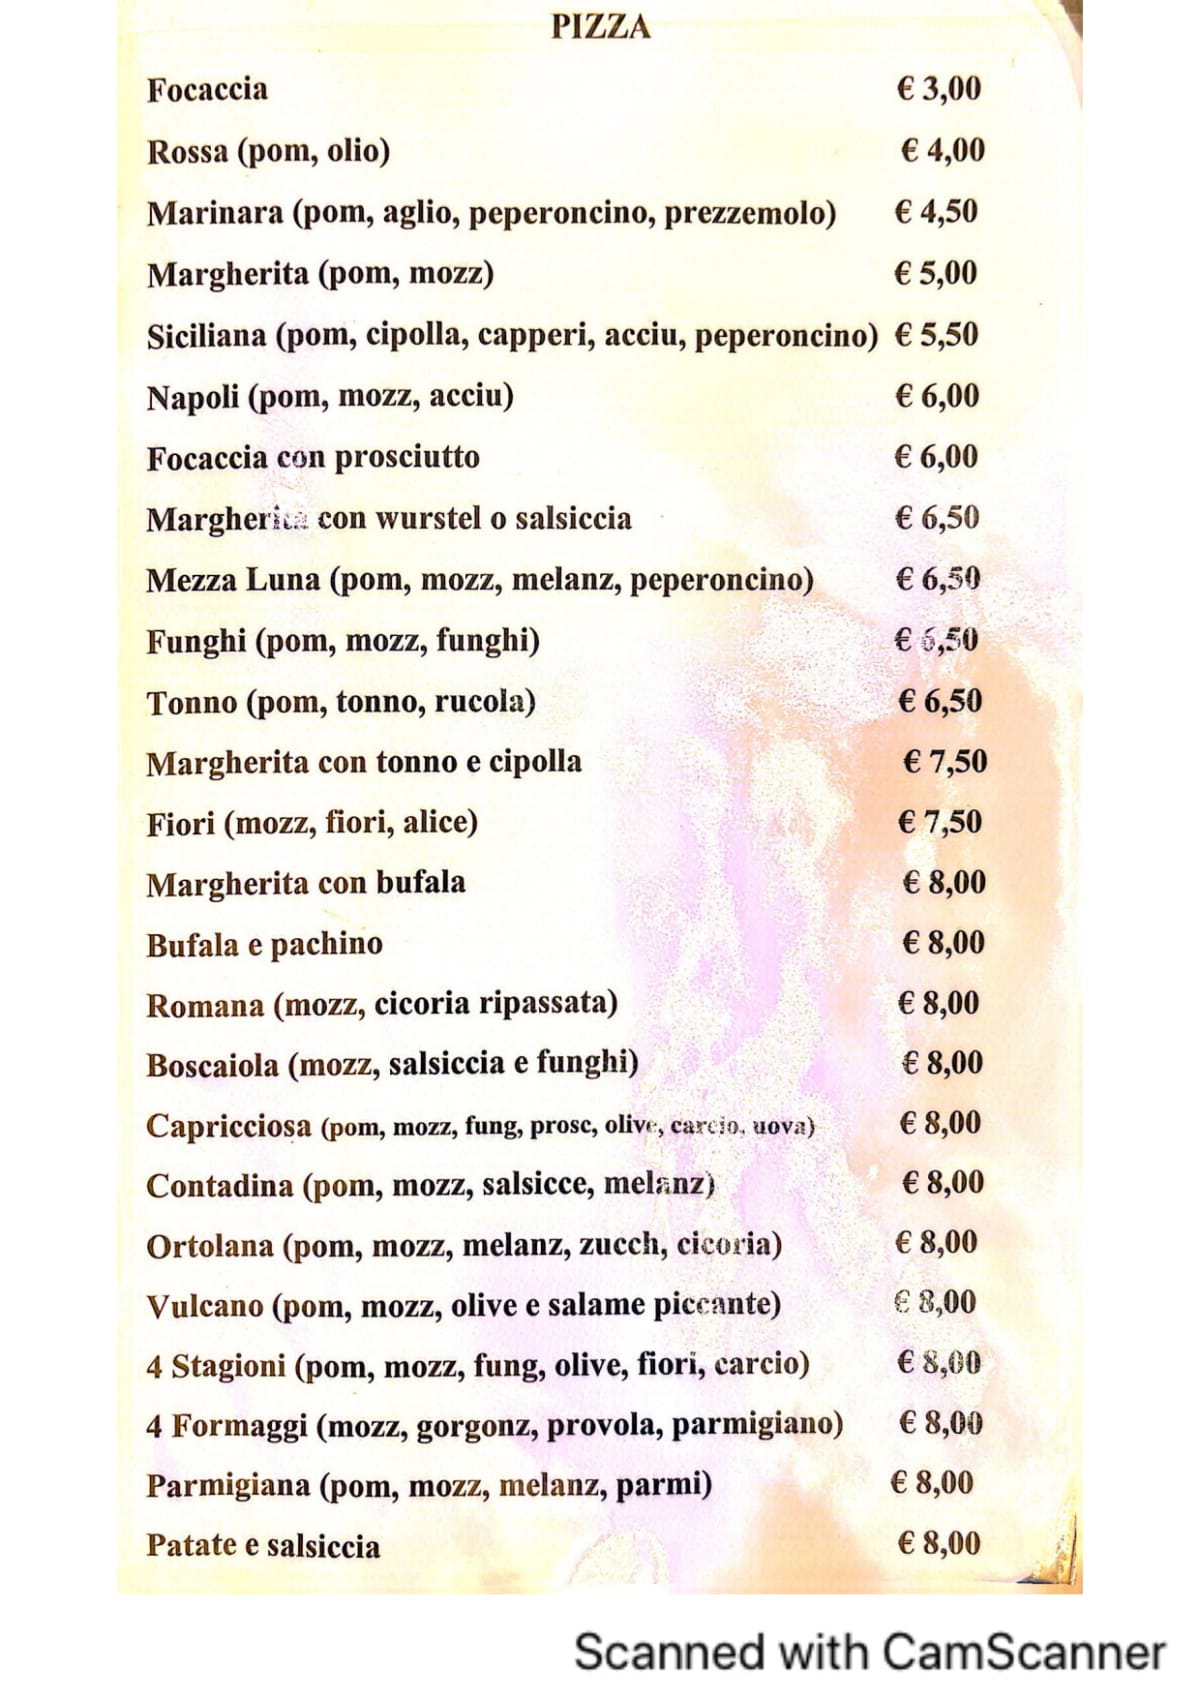 L'Altro Angolo menu